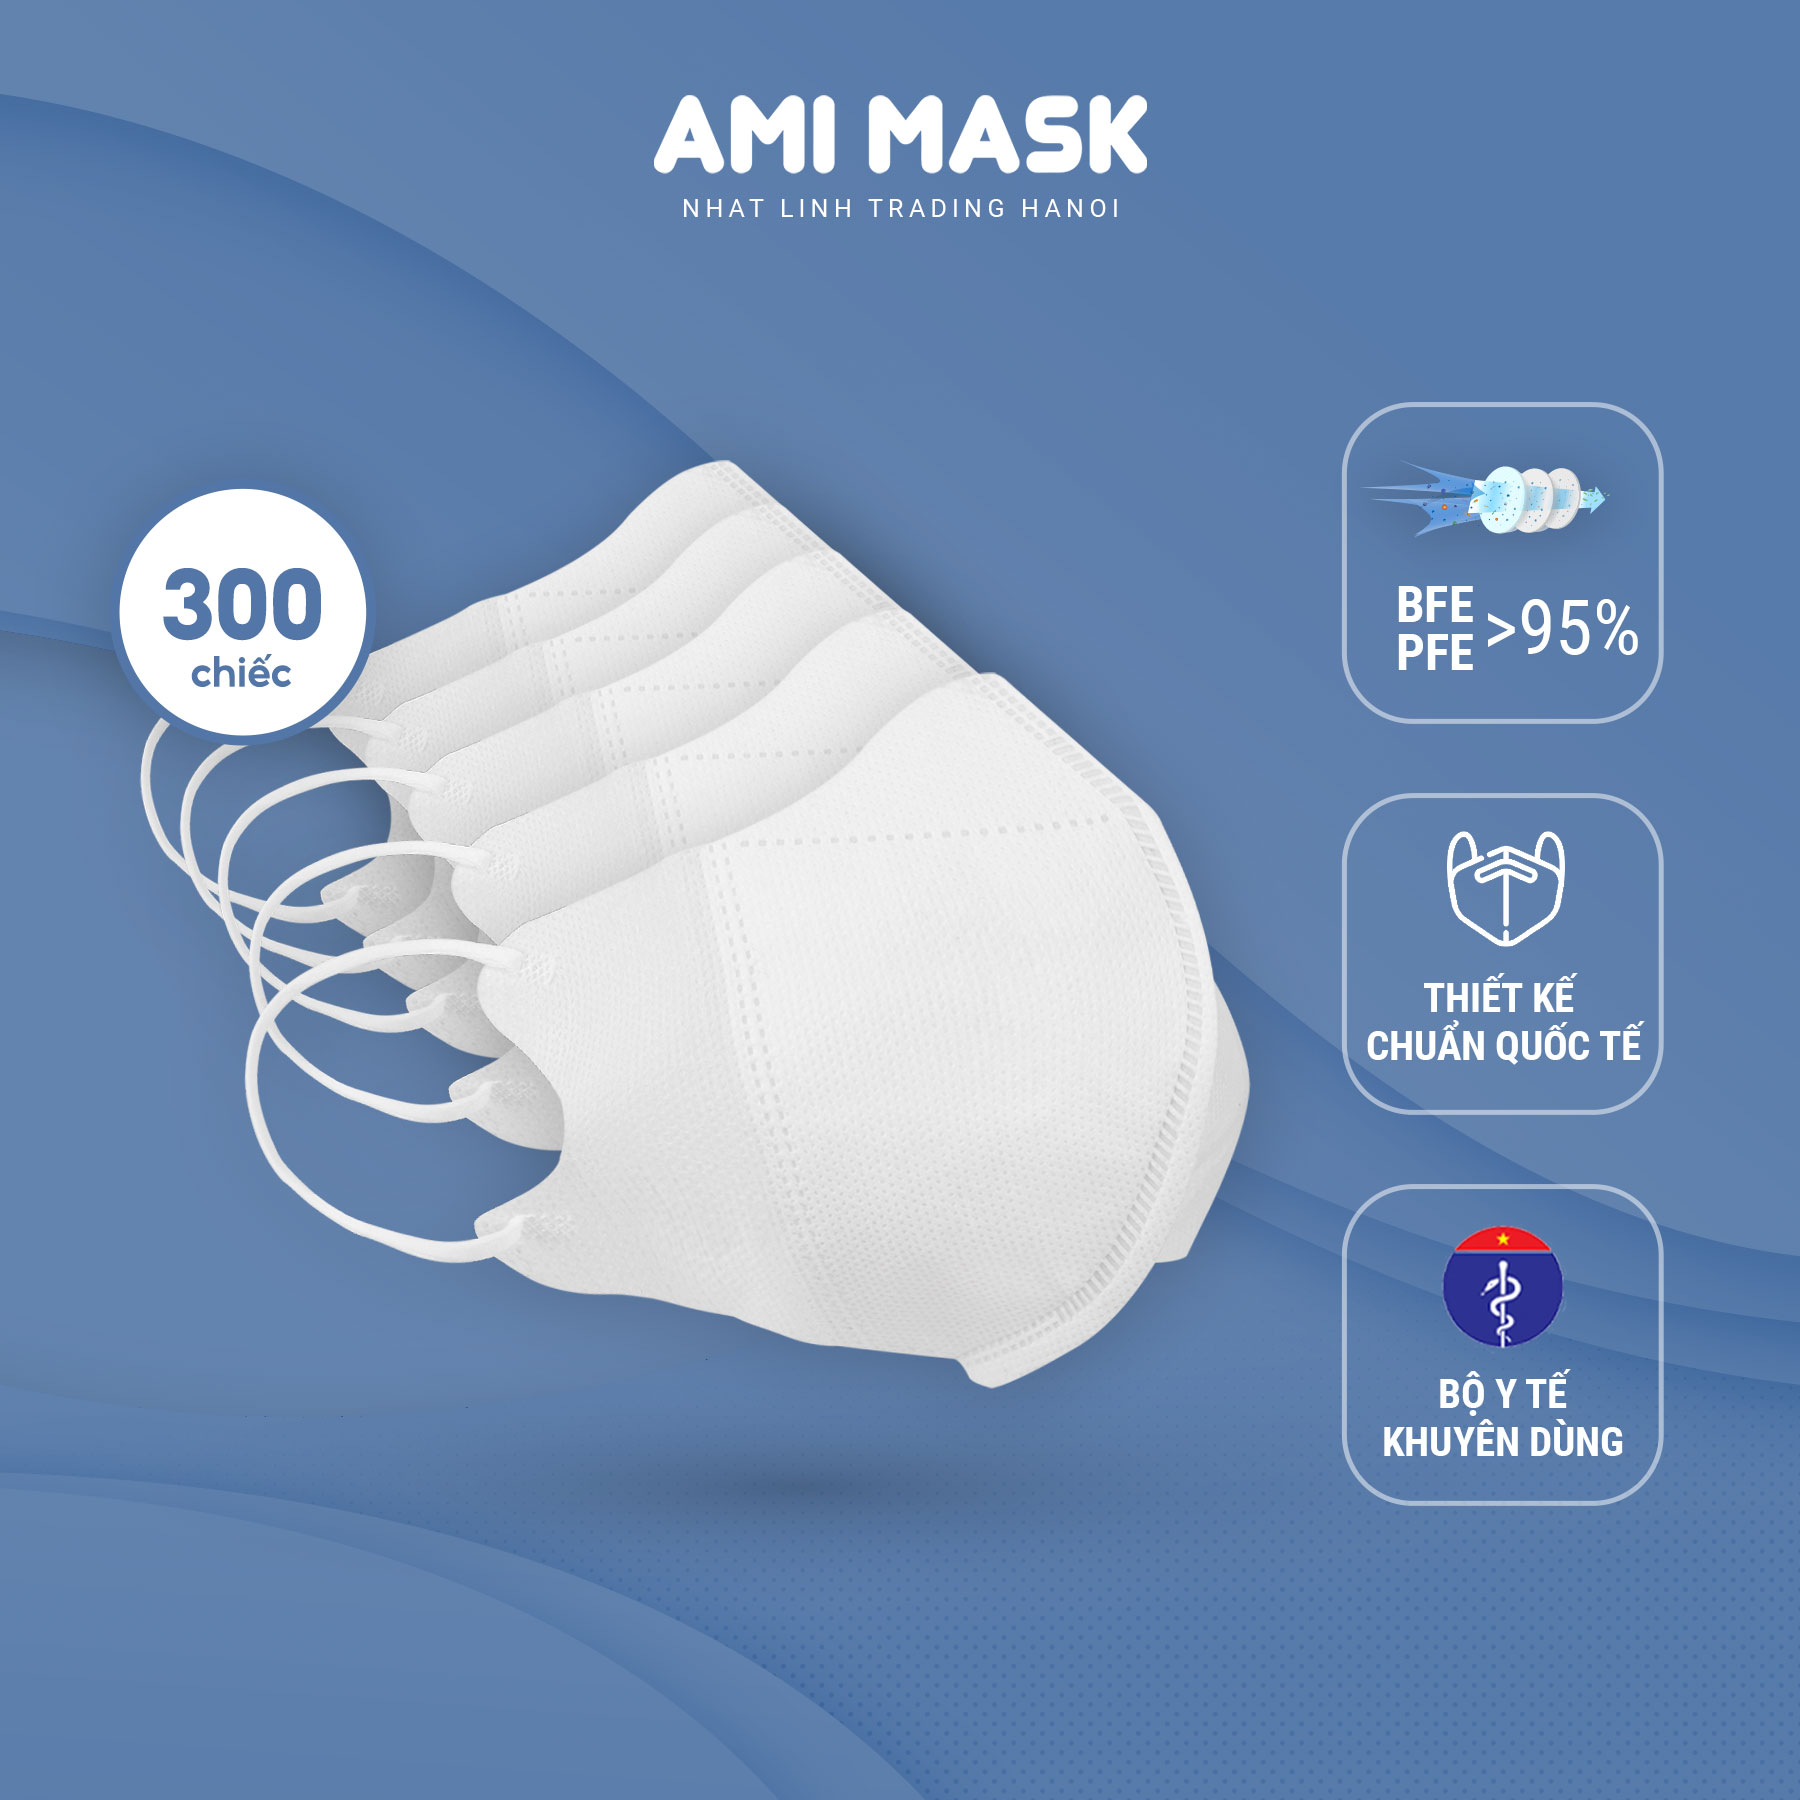 [200-300 chiếc] Khẩu trang y tế AMI 5D Mask 3 lớp đạt chuẩn, kiểu dáng khẩu trang 5D ôm gọn kháng khuẩn, chống bụi mịn